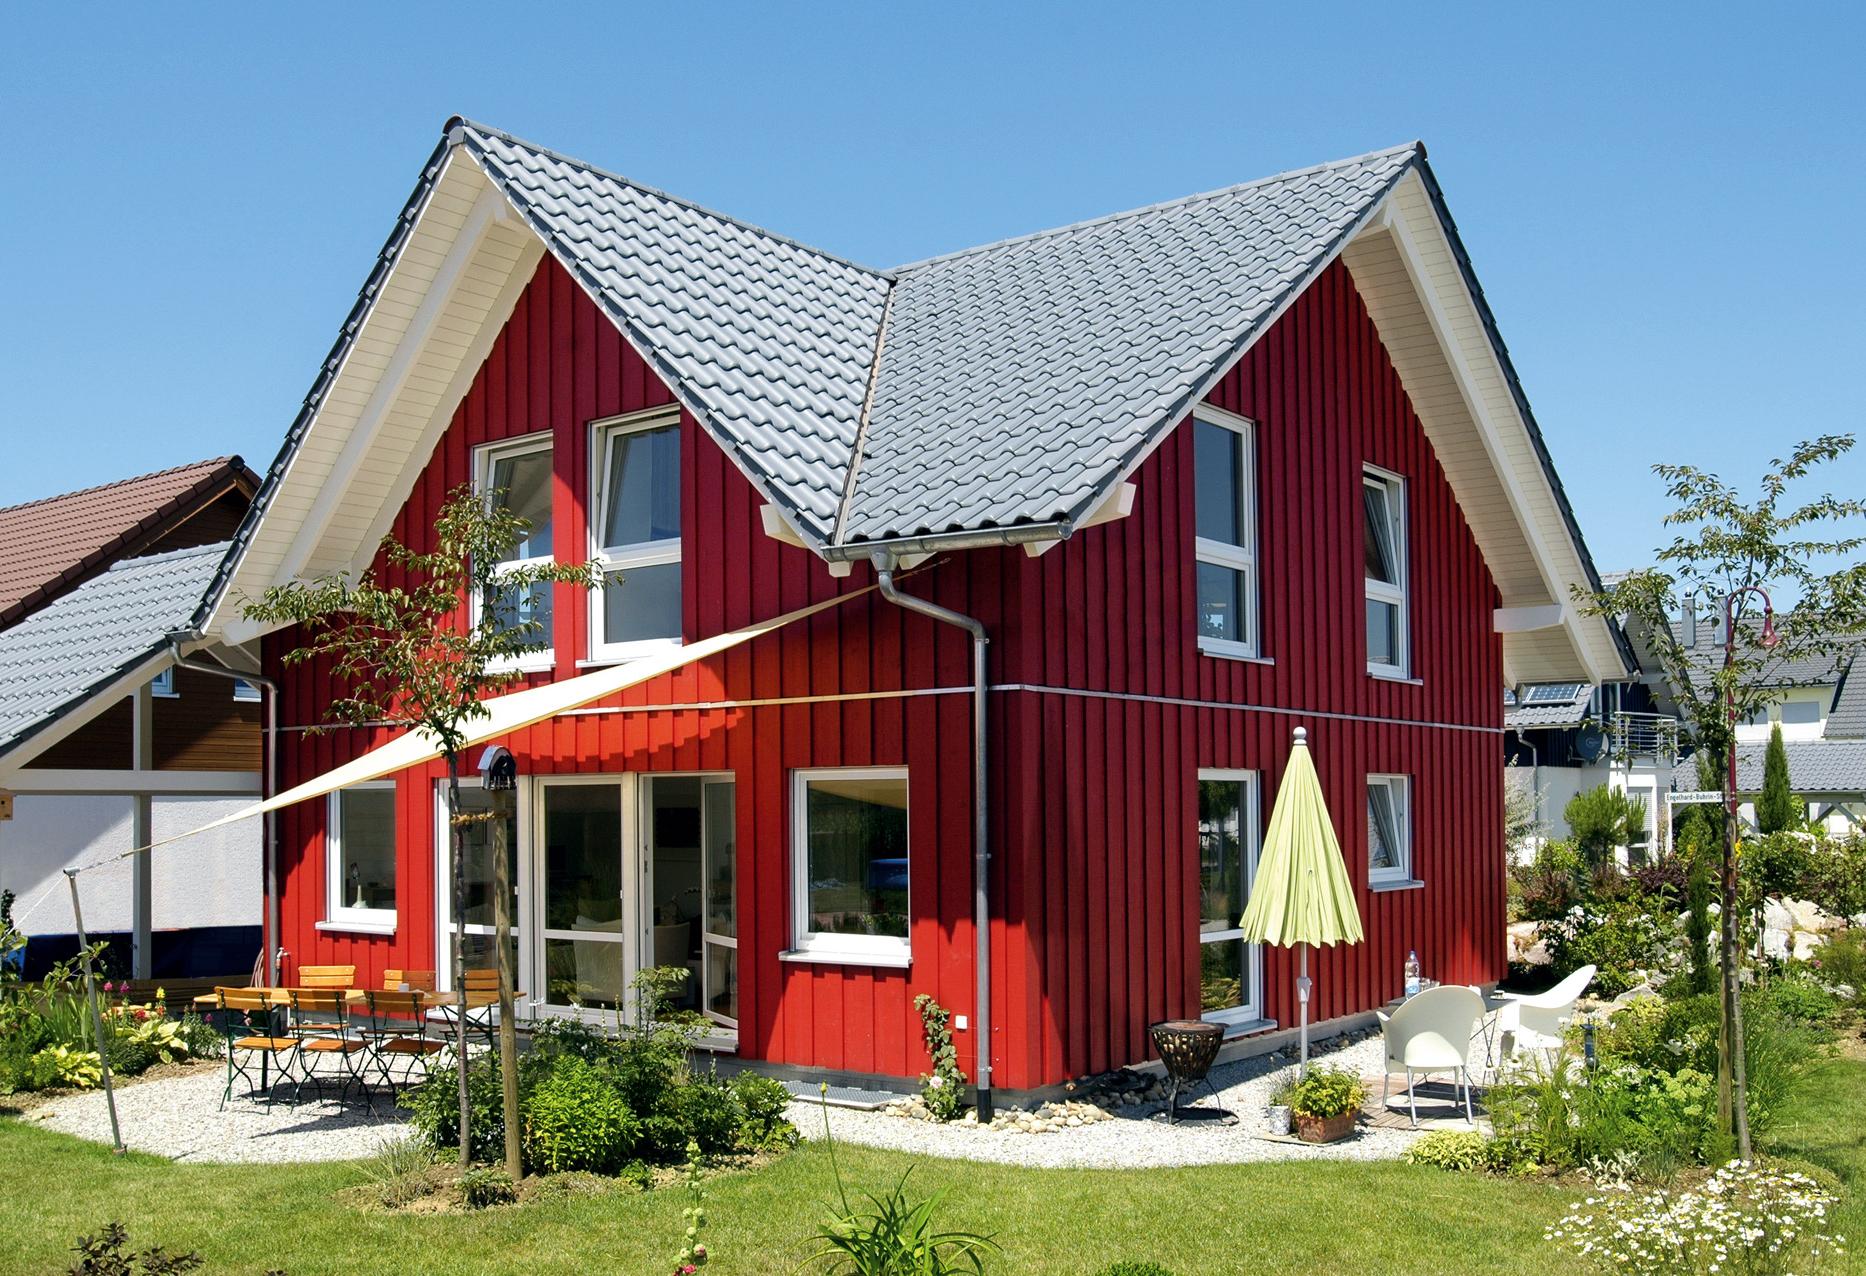 Casa prefabbricata country house in stile scandinavo von facciata rossa in legno e tetto a due falde  